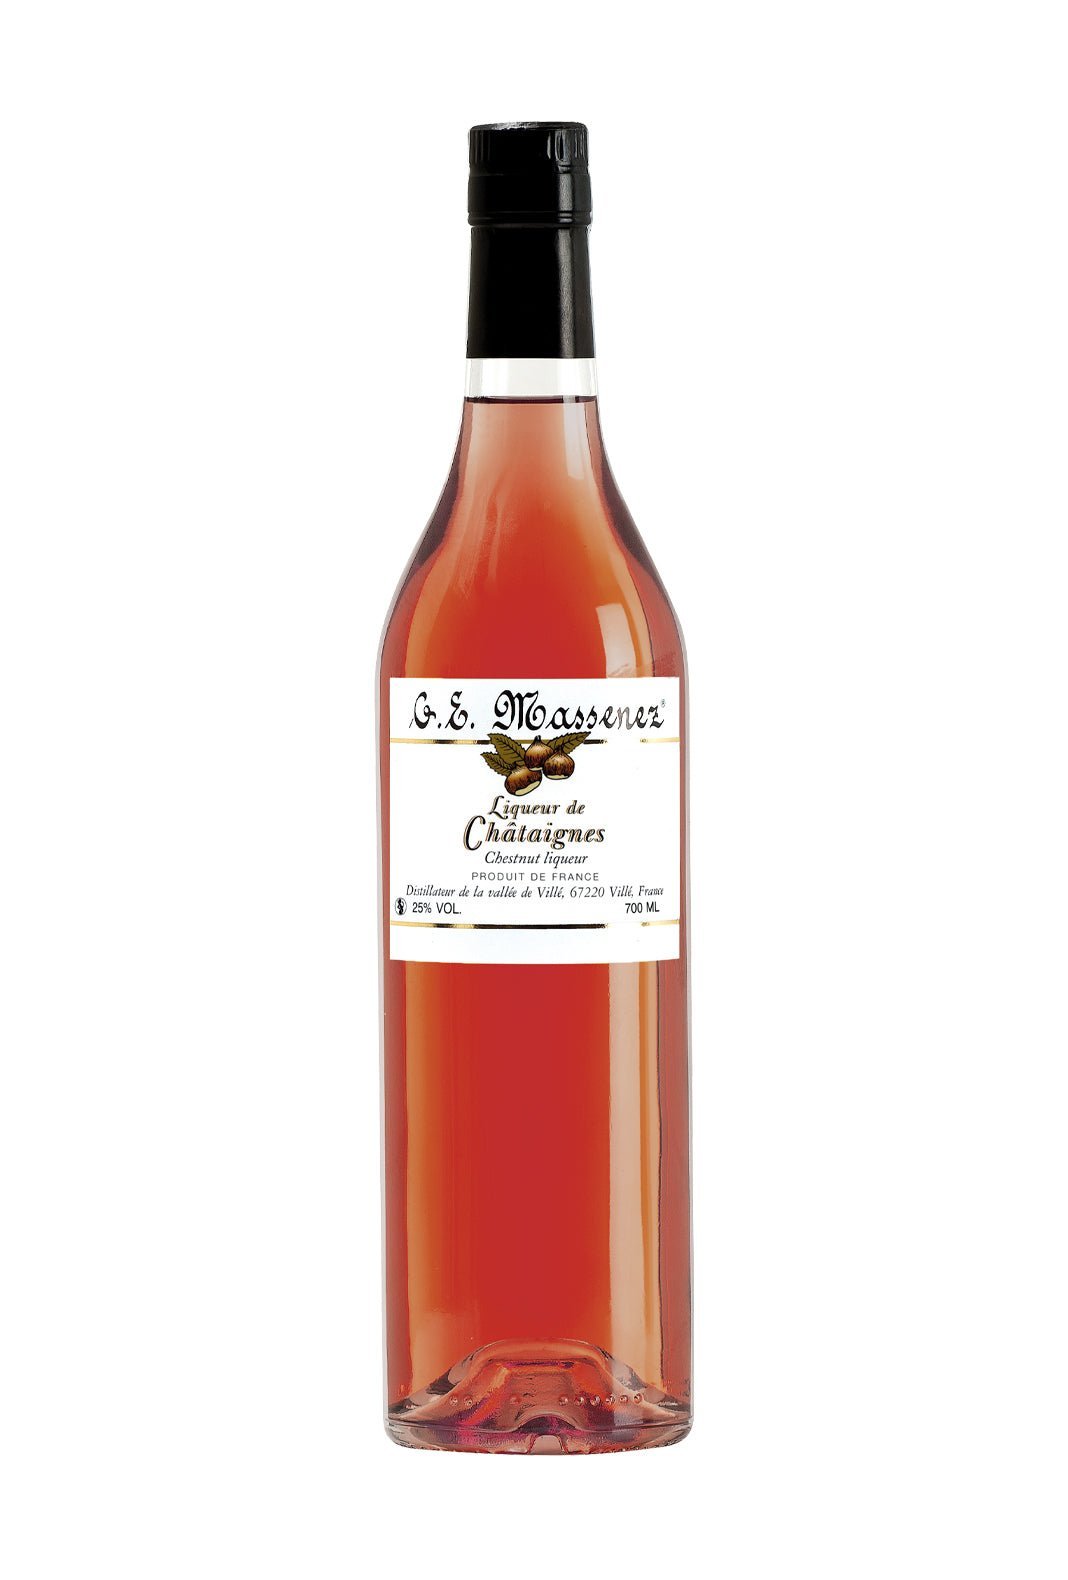 Massenez Liqueur de Chataigne (Chestnut) 25% 700ml | Liqueurs | Shop online at Spirits of France